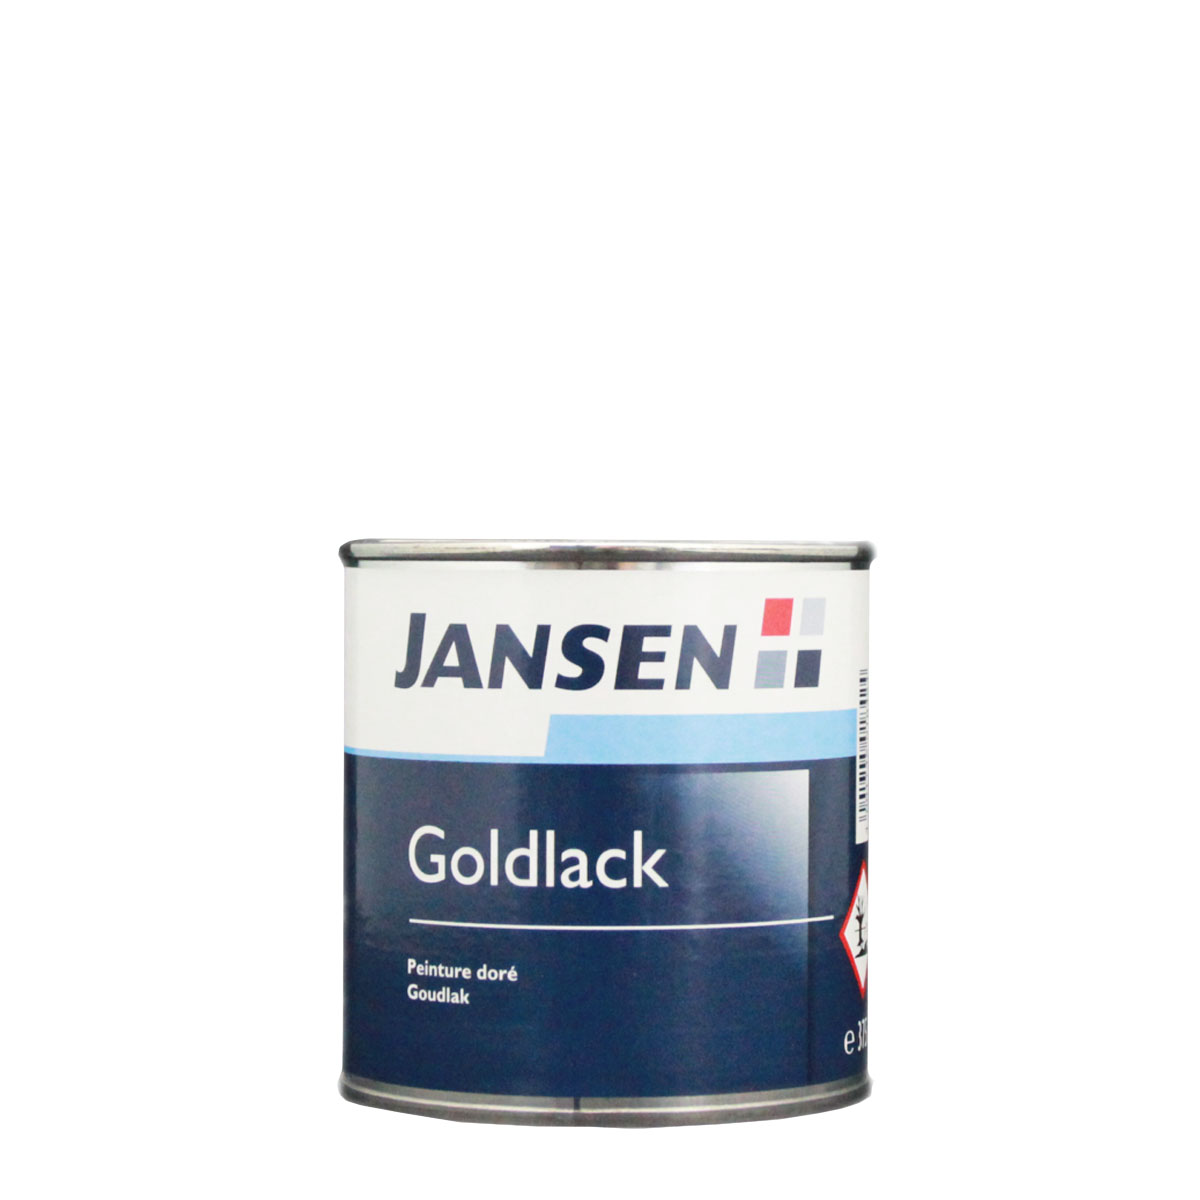 Jansen_goldlack_gross